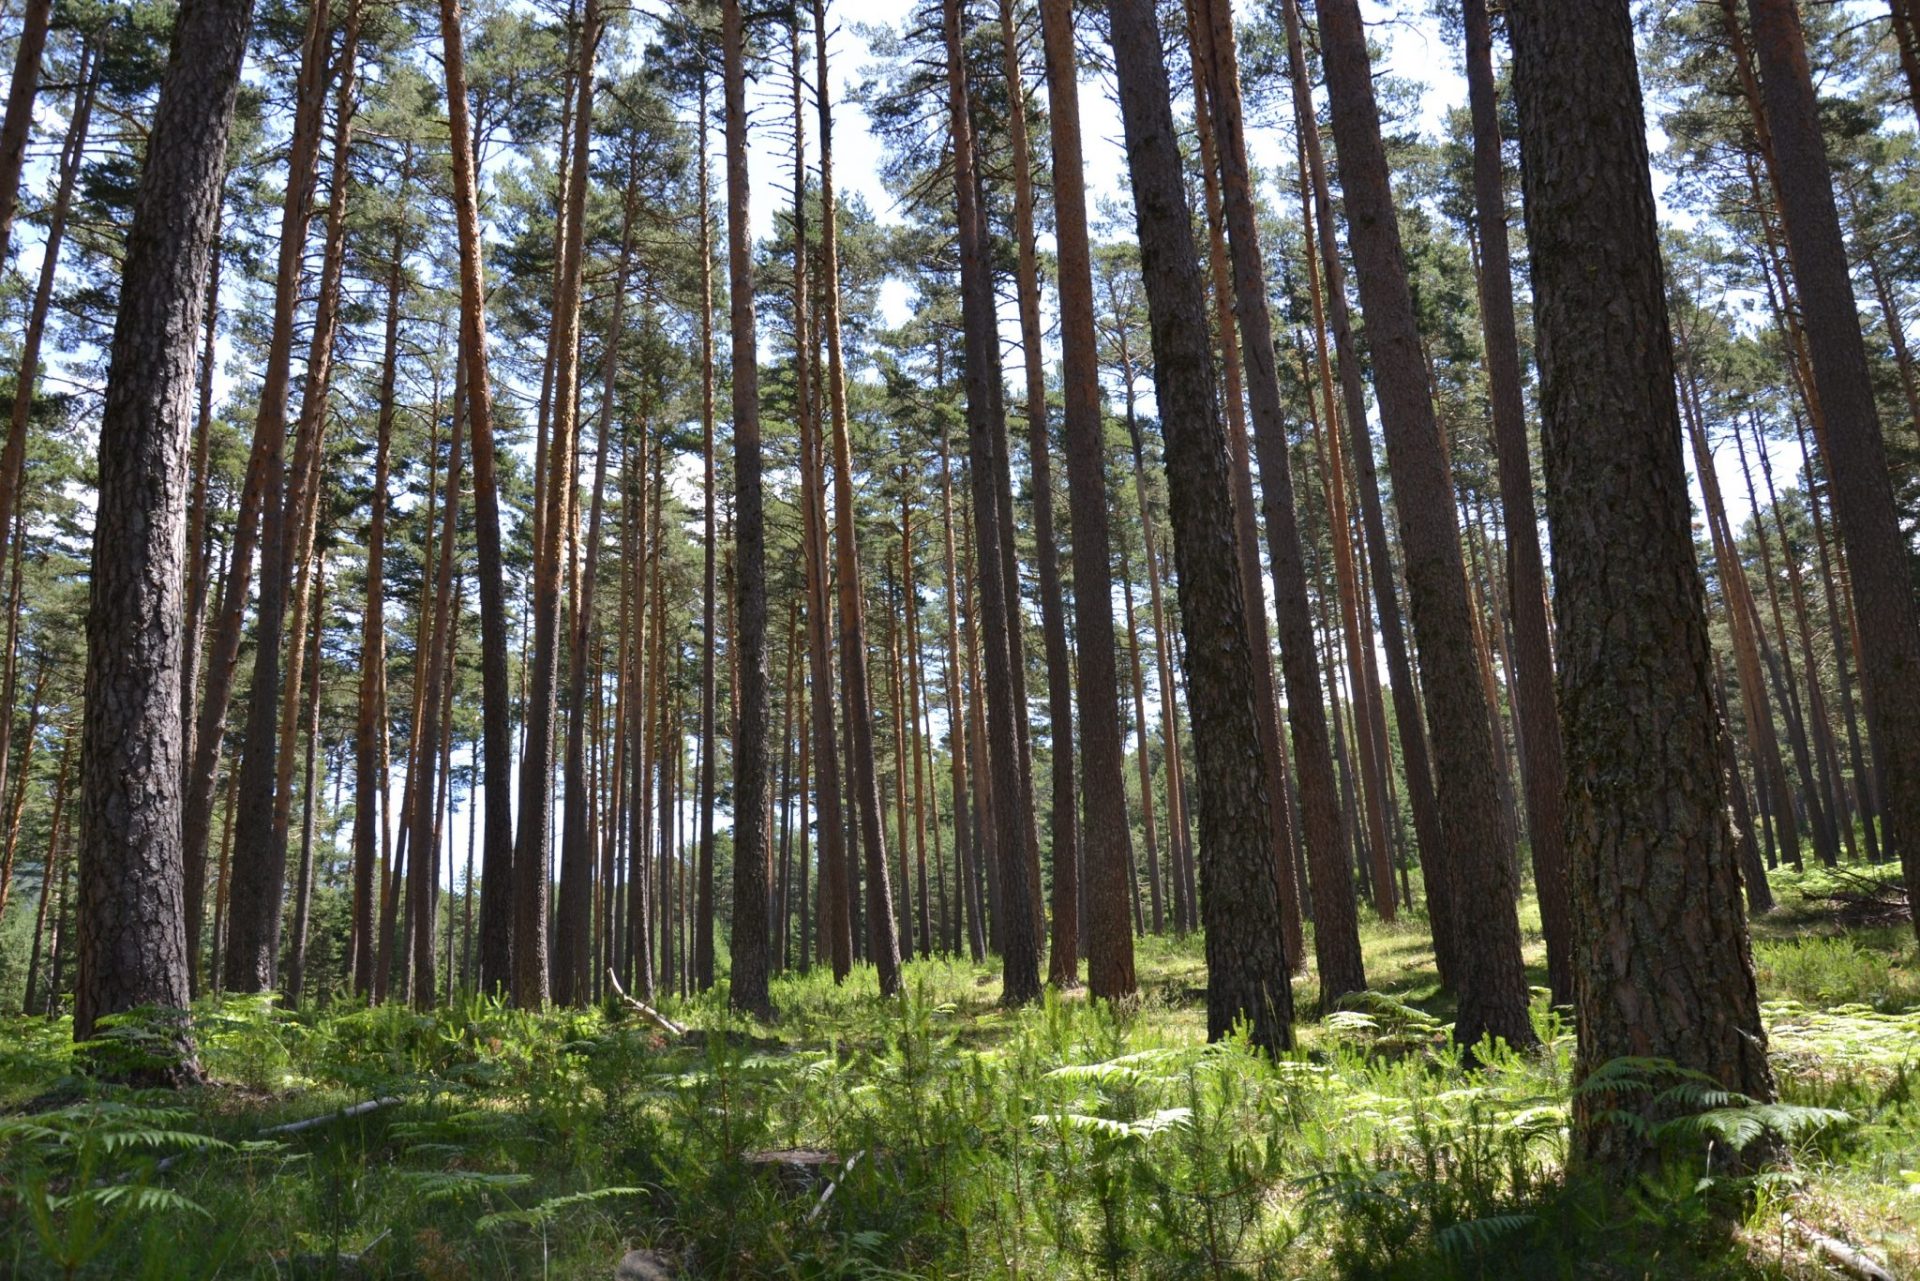 Bosque de pinos en Valsaín (Segovia), un ejemplo de aprovechamientos forestales desde hace varios siglos y de conservación de la naturaleza. Foto: Raúl Casado (EFE).